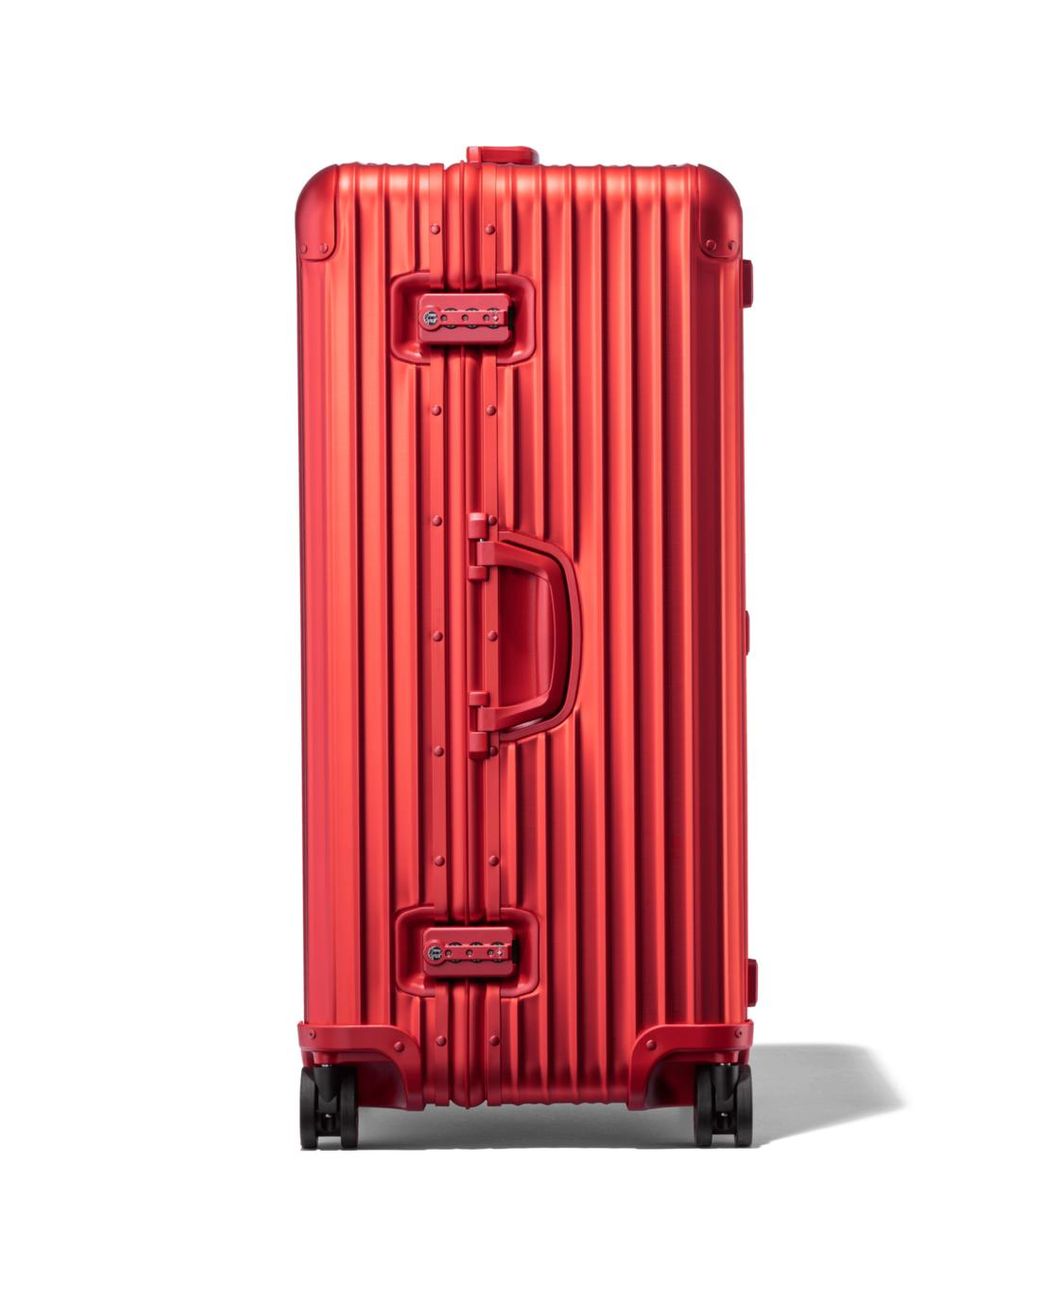 Gucci Rimowa Red Luggage